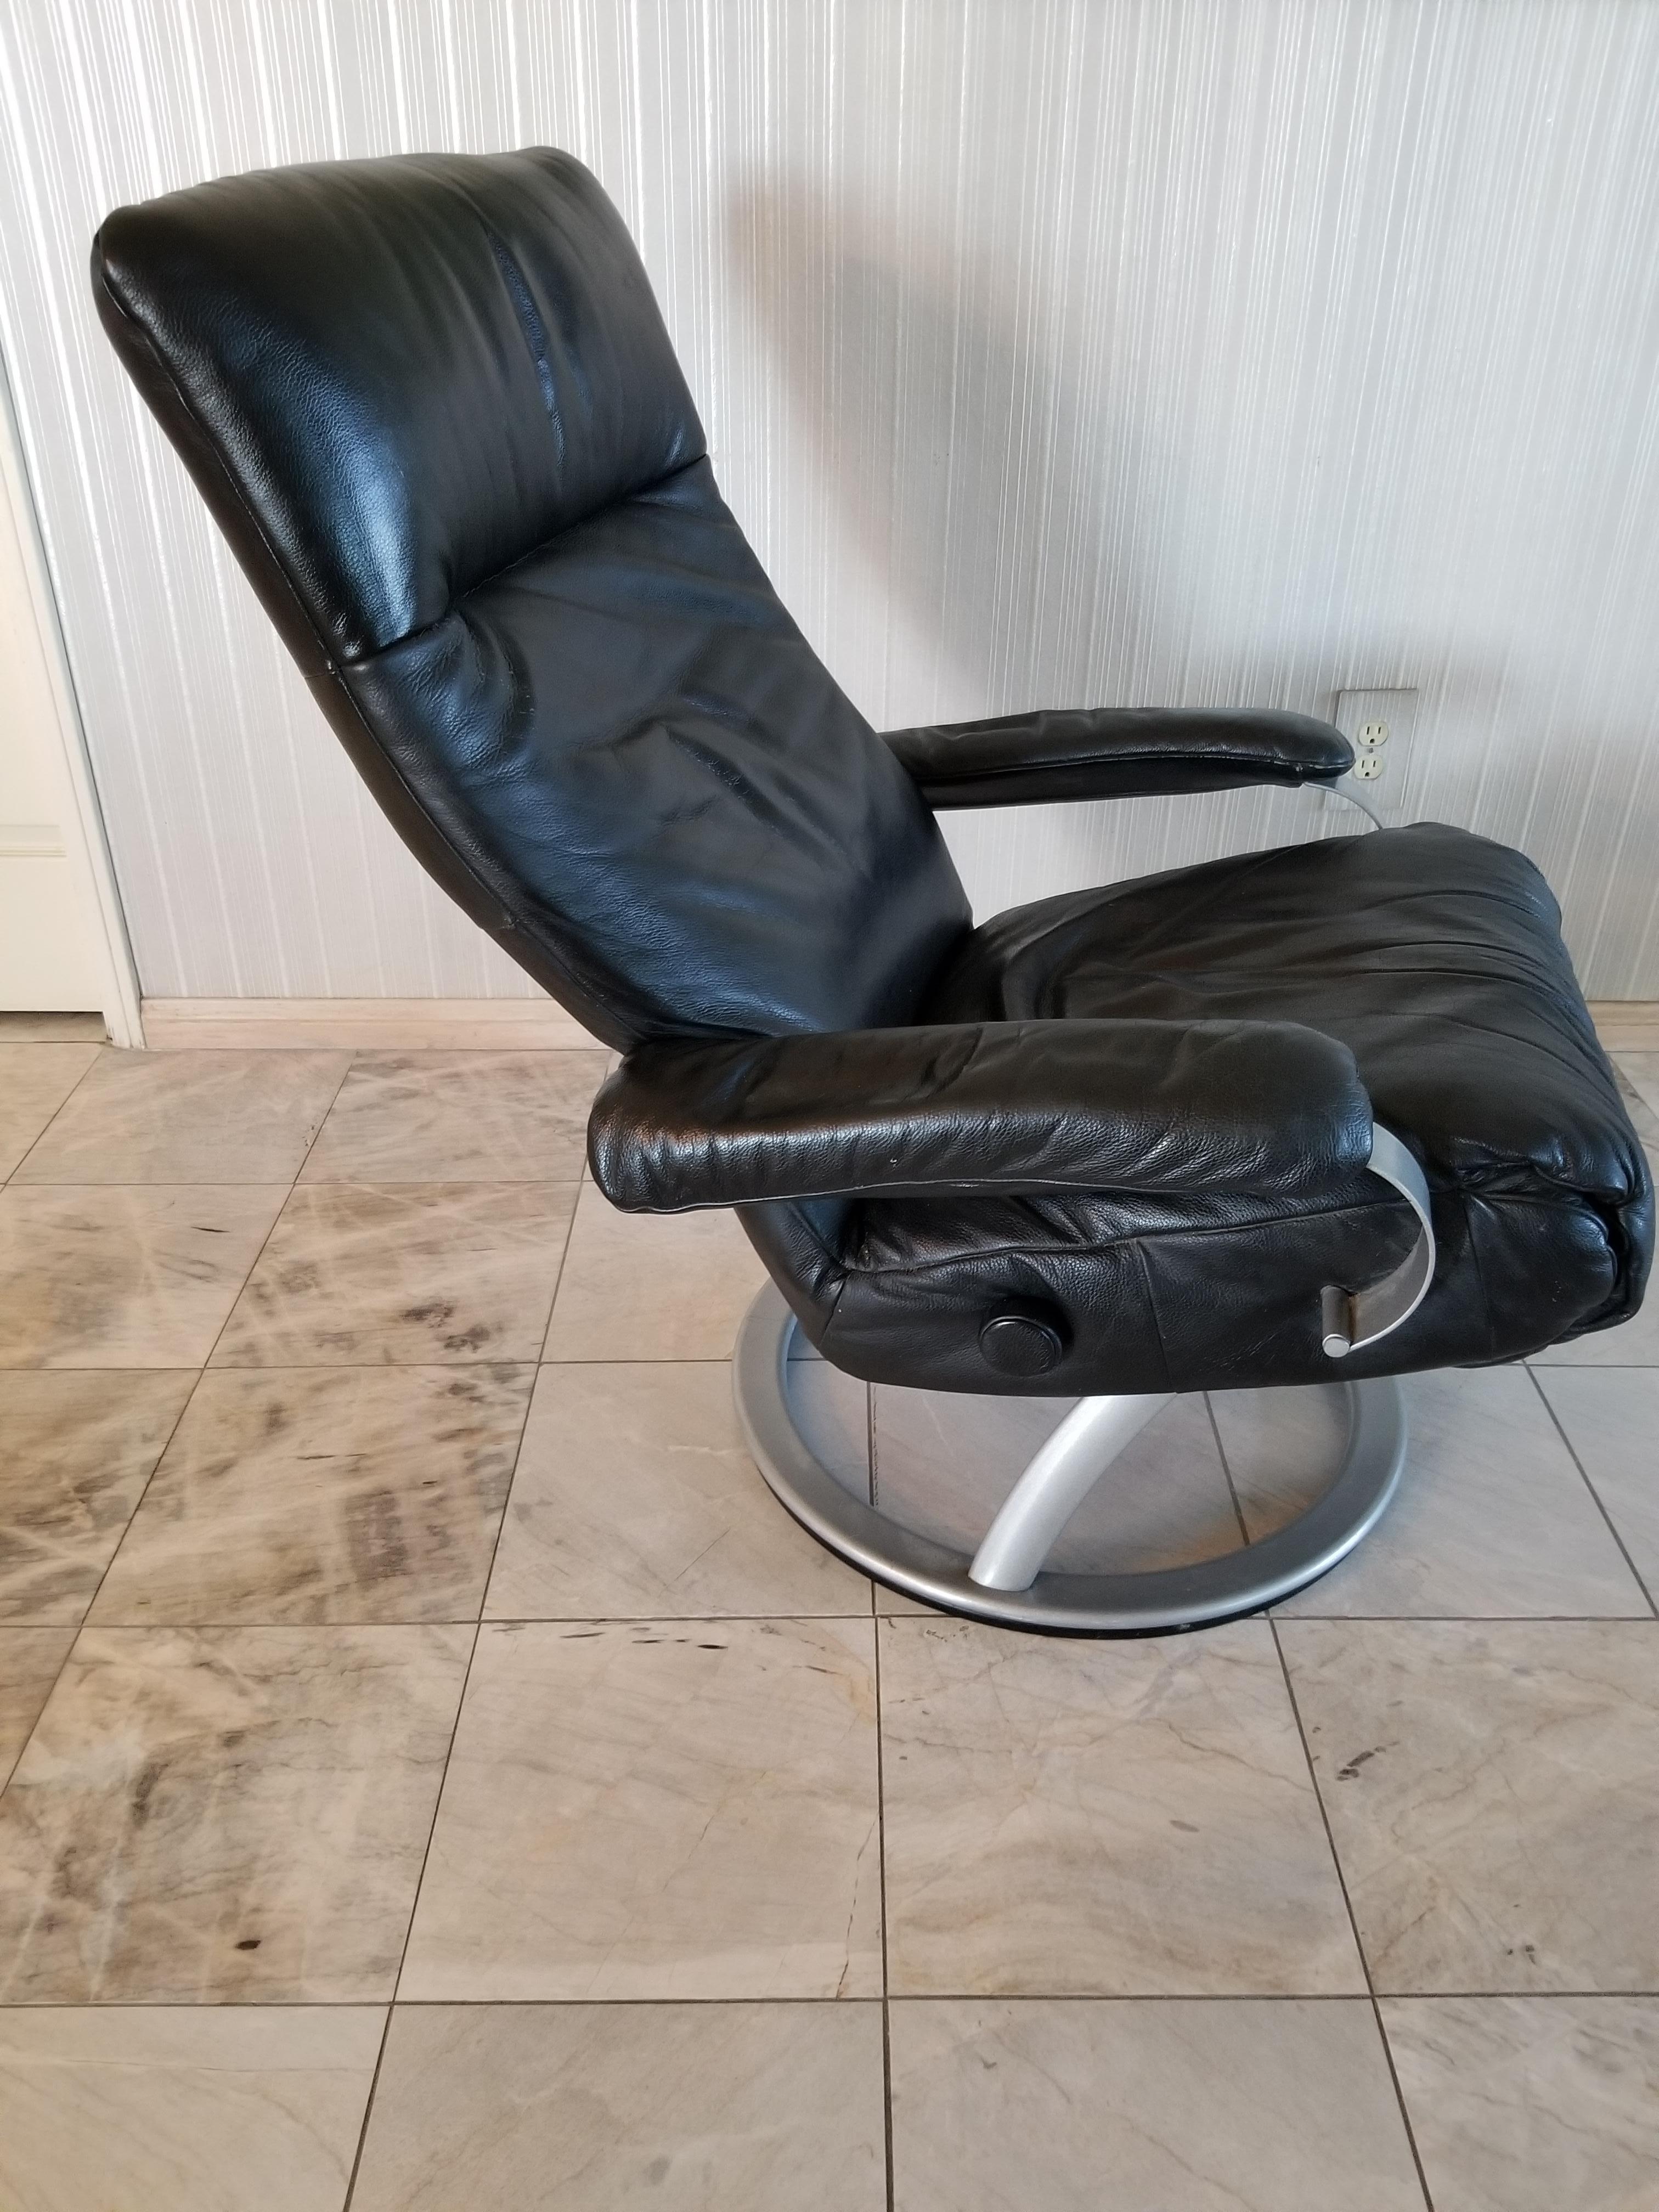 Percival Lafer Modern Leather Recliner Ergonomic Kiri Swivel Lounge Chair Brazil 4